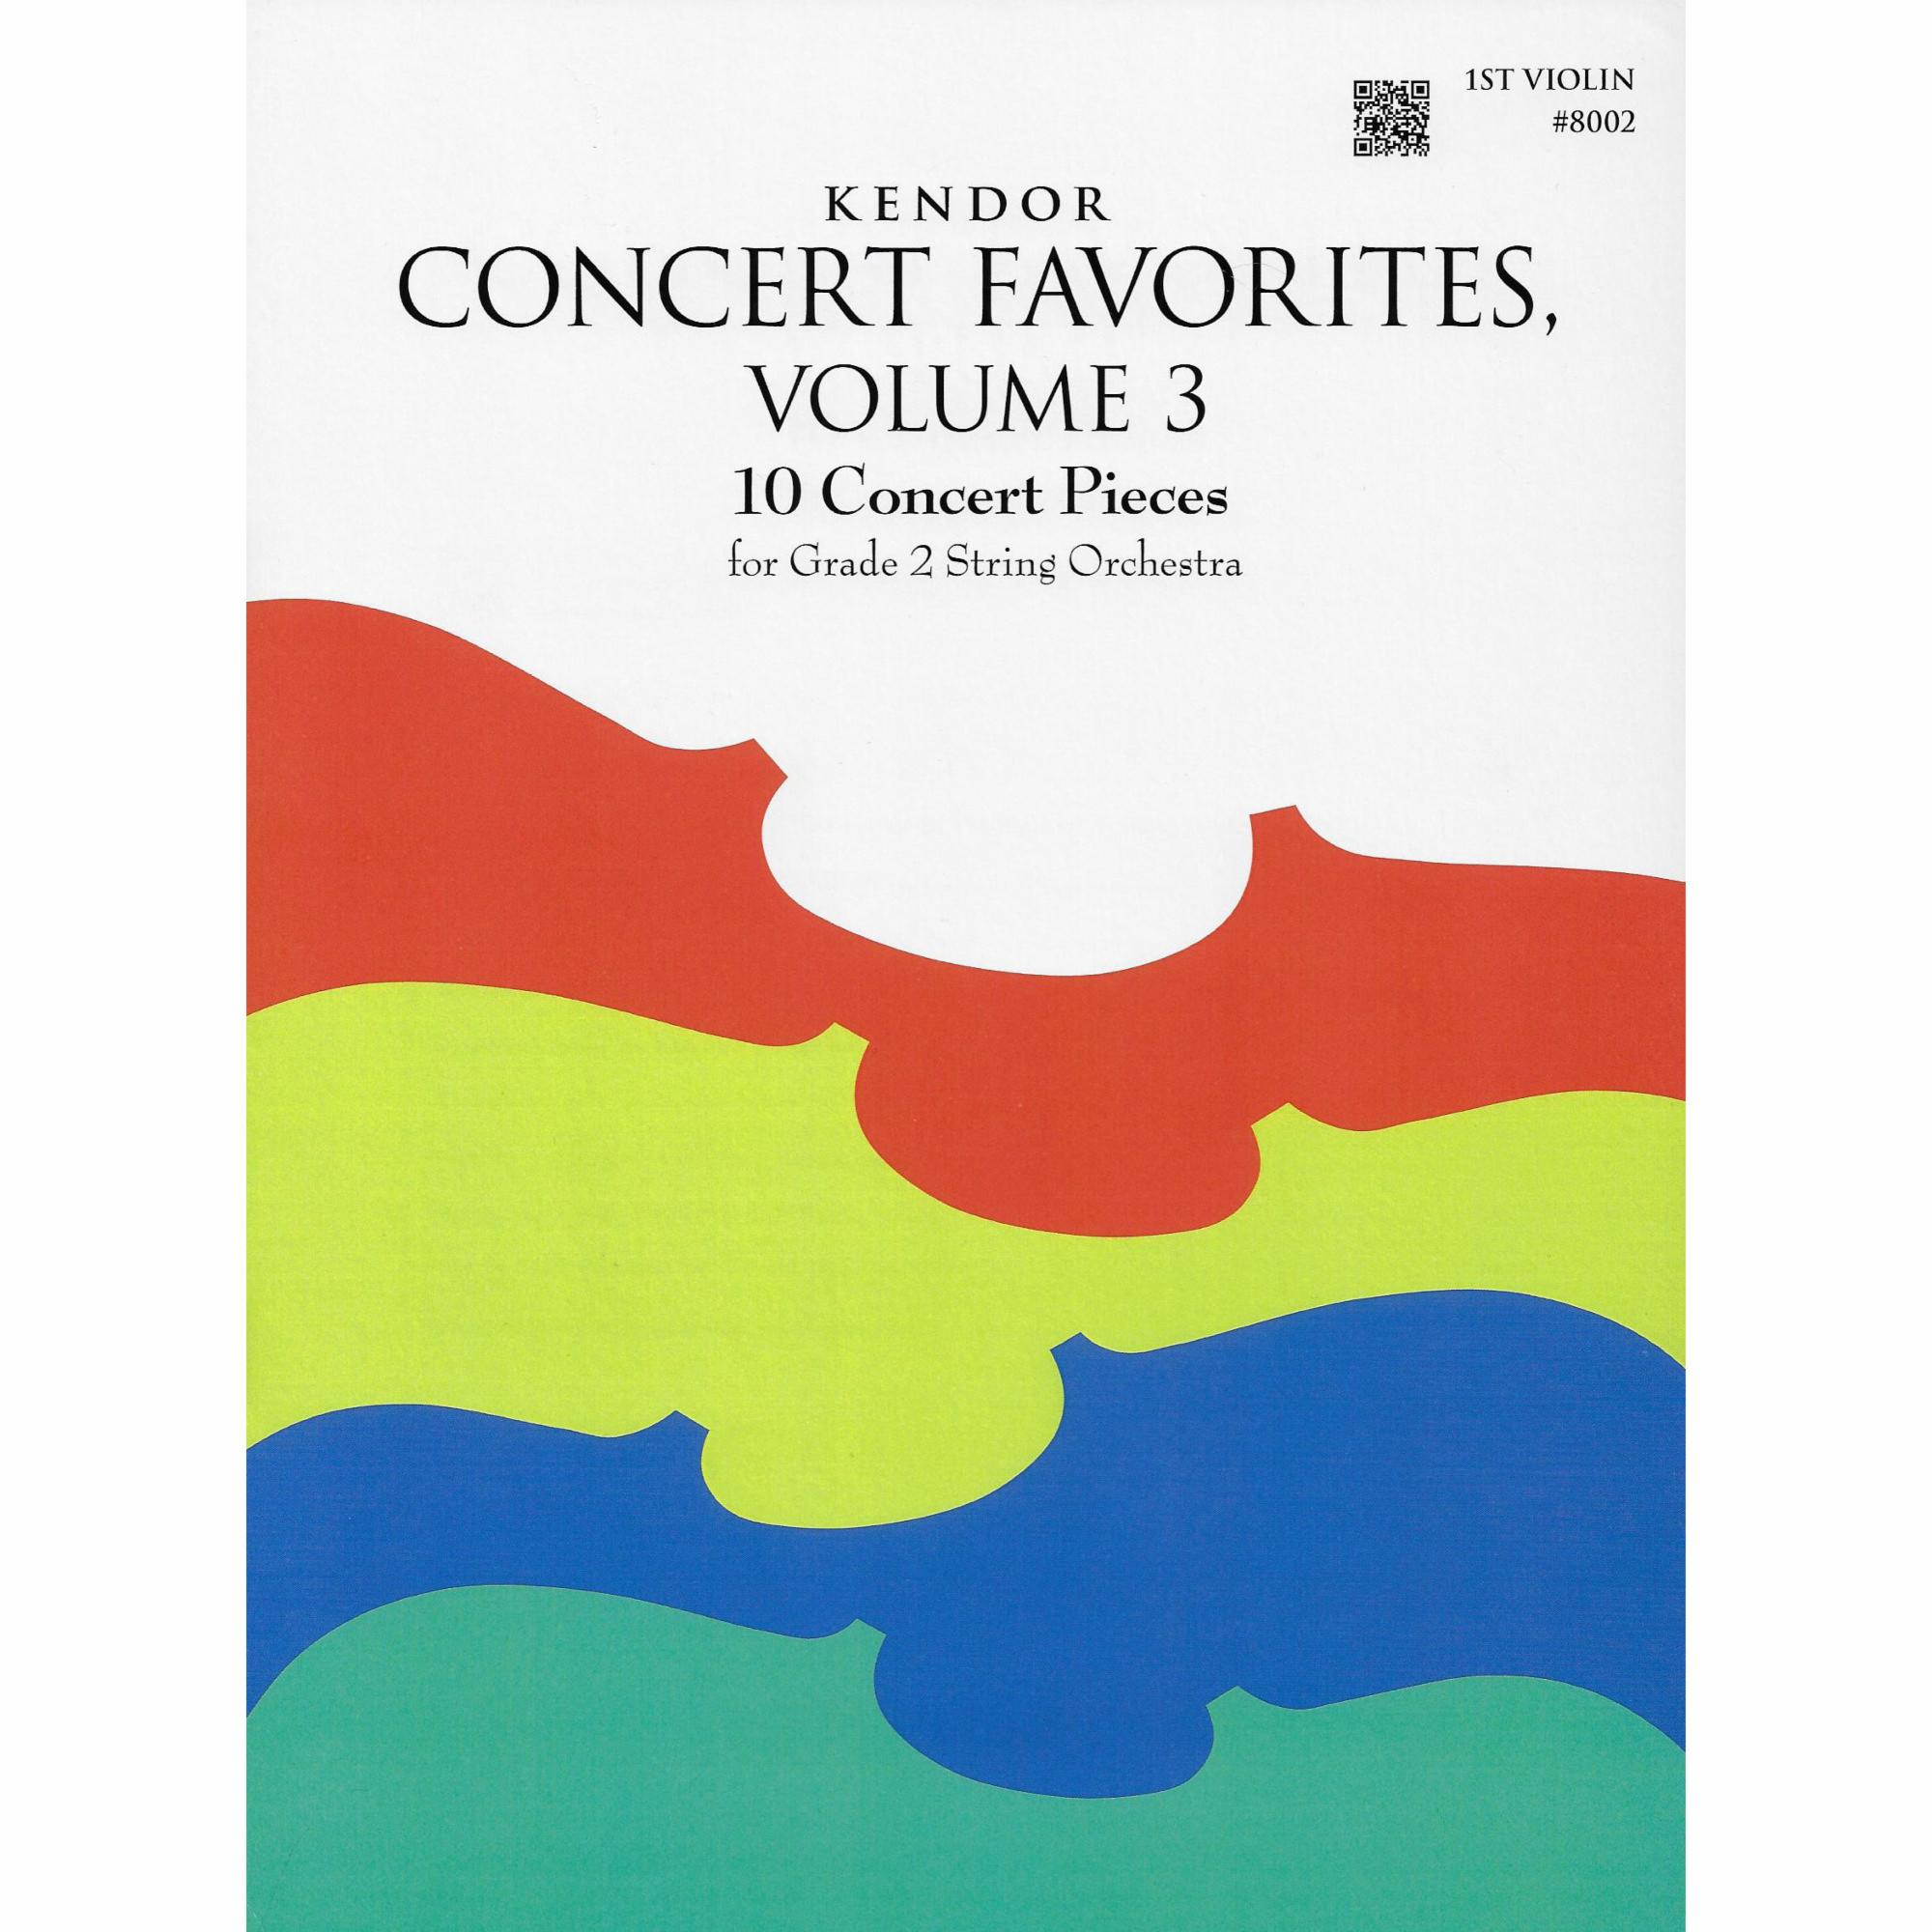 Kendor Concert Favorites, Volume 3 for String Orchestra